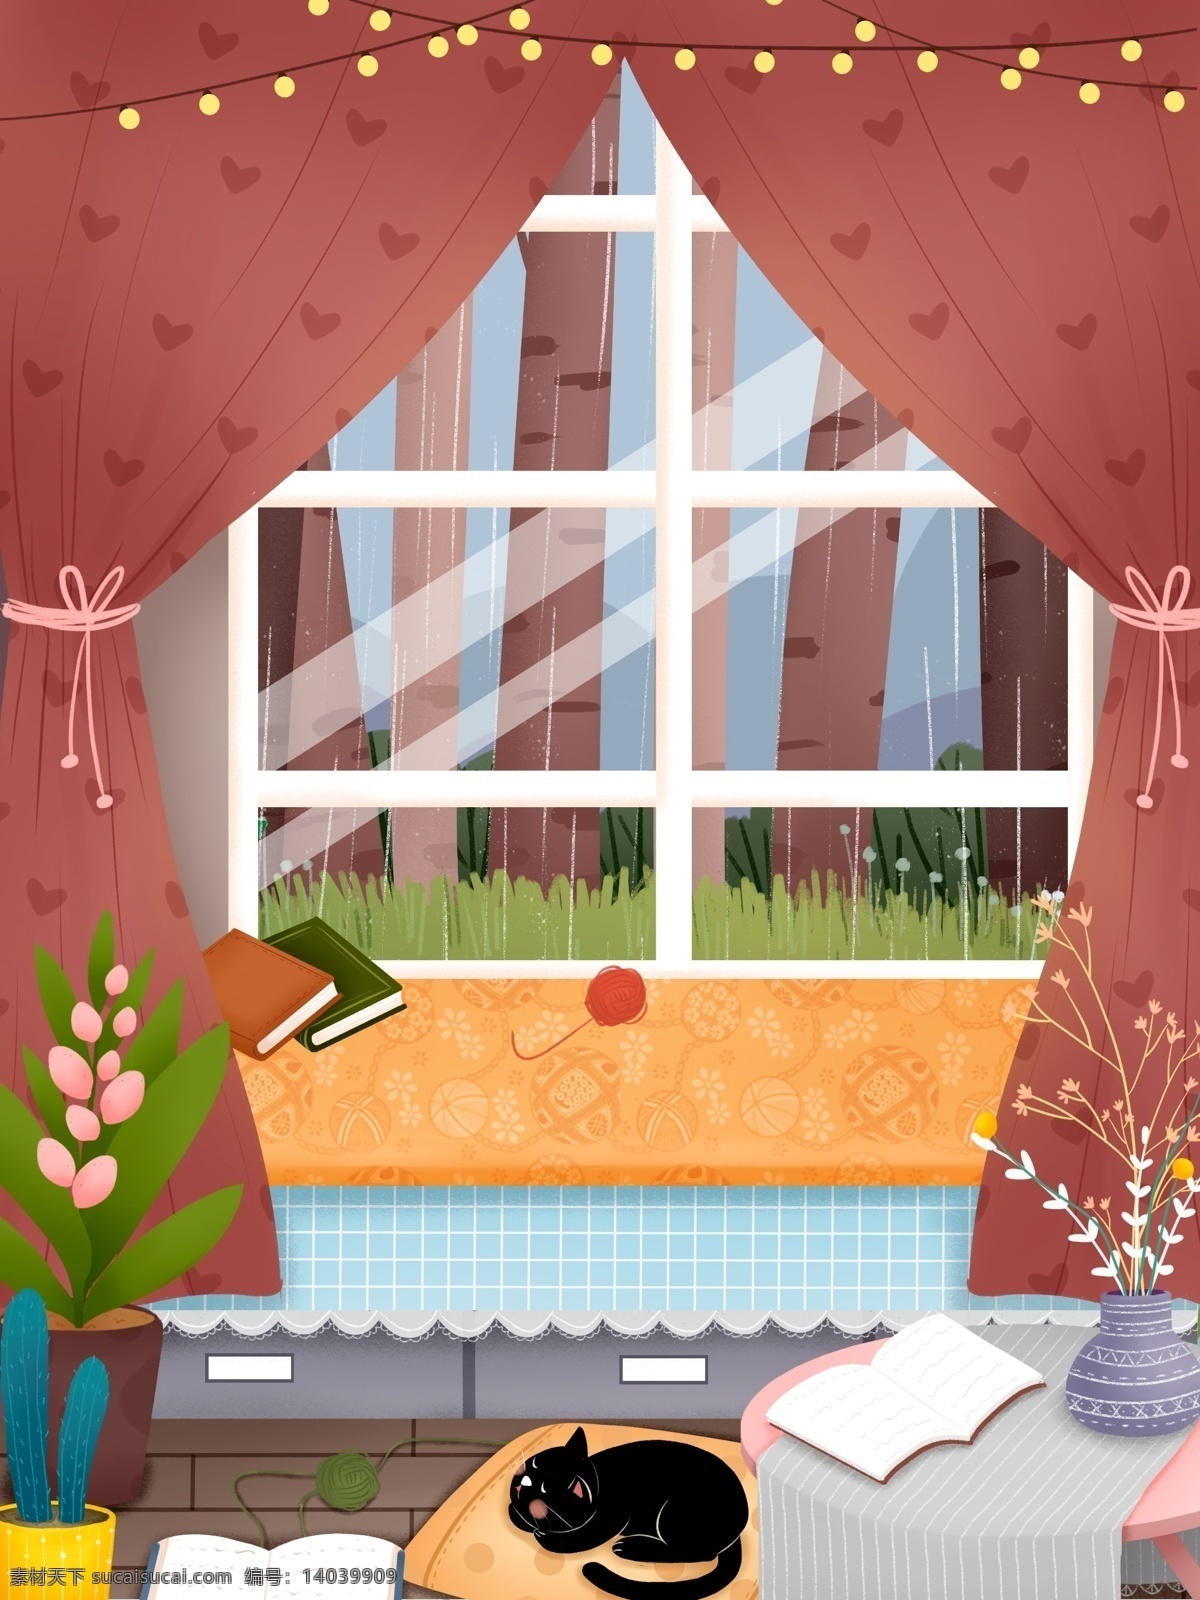 彩绘 冬季 温馨 家居 盆栽 背景 小猫 桌子 窗外风景 背景素材 插画背景 通用背景 手绘背景